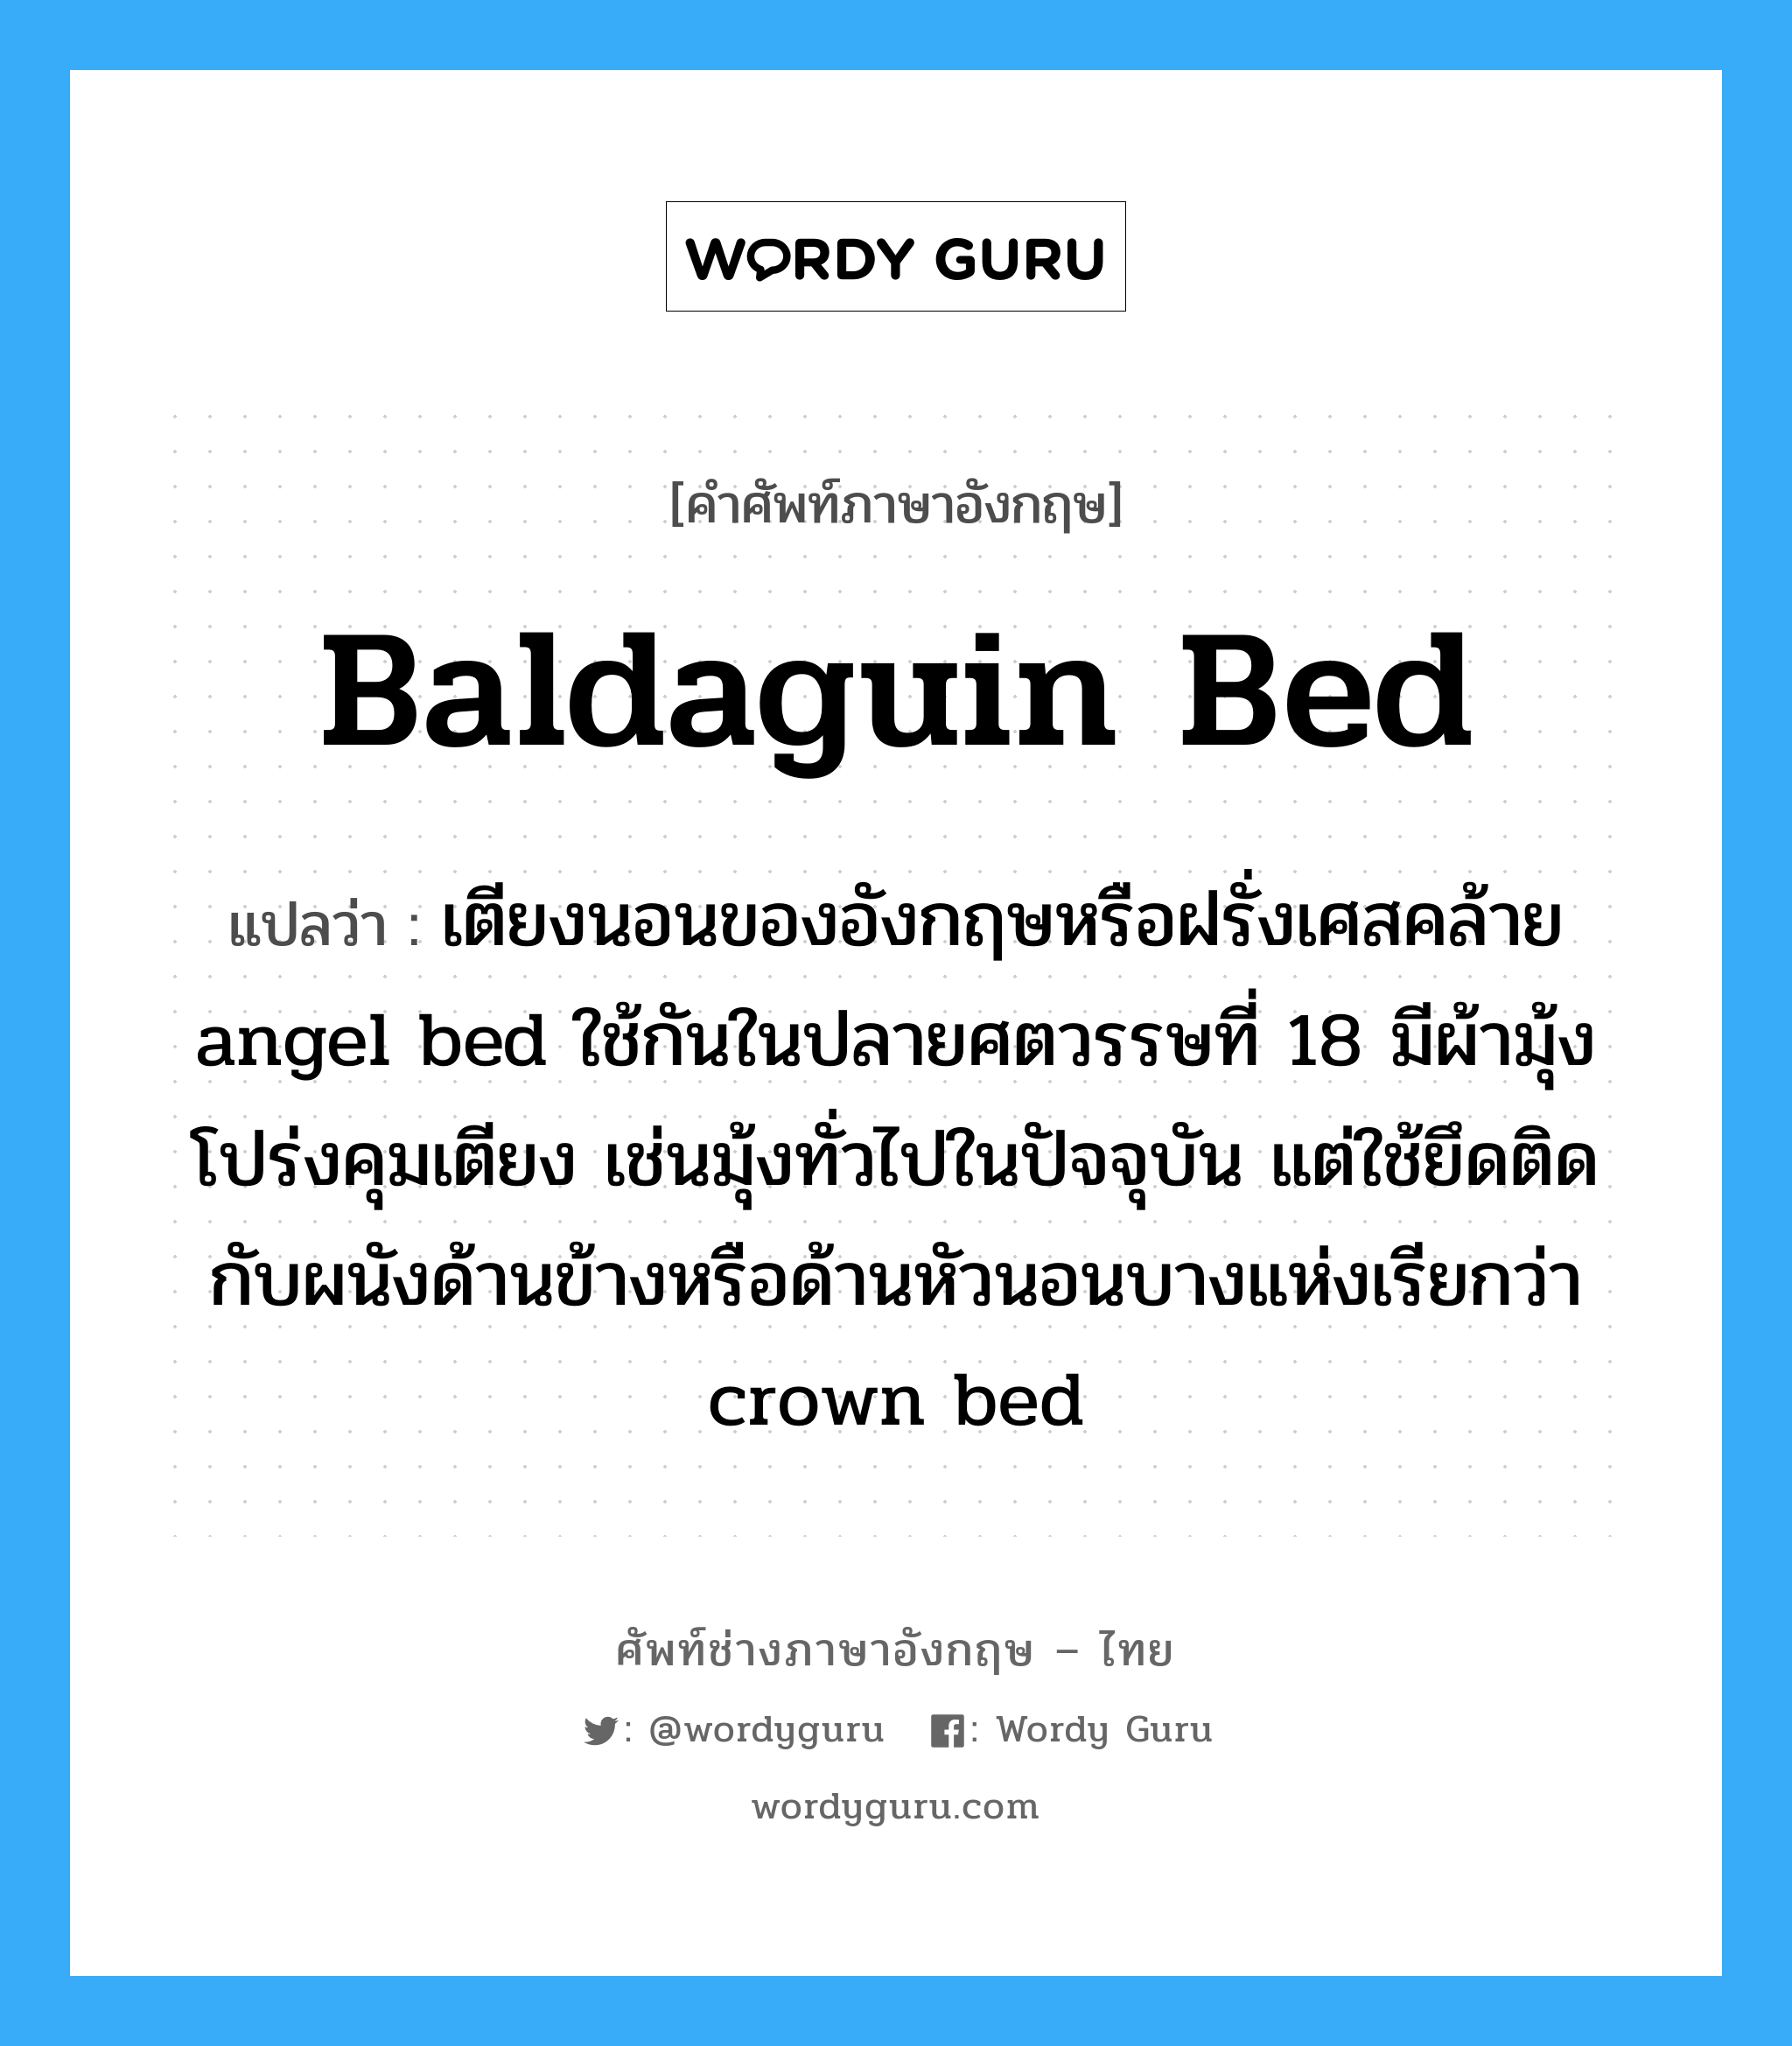 เตียงนอนของอังกฤษหรือฝรั่งเศสคล้าย angel bed ใช้กันในปลายศตวรรษที่ 18 มีผ้ามุ้งโปร่งคุมเตียง เช่นมุ้งทั่วไปในปัจจุบัน แต่ใช้ยึดติดกับผนังด้านข้างหรือด้านหัวนอนบางแห่งเรียกว่า crown bed ภาษาอังกฤษ?, คำศัพท์ช่างภาษาอังกฤษ - ไทย เตียงนอนของอังกฤษหรือฝรั่งเศสคล้าย angel bed ใช้กันในปลายศตวรรษที่ 18 มีผ้ามุ้งโปร่งคุมเตียง เช่นมุ้งทั่วไปในปัจจุบัน แต่ใช้ยึดติดกับผนังด้านข้างหรือด้านหัวนอนบางแห่งเรียกว่า crown bed คำศัพท์ภาษาอังกฤษ เตียงนอนของอังกฤษหรือฝรั่งเศสคล้าย angel bed ใช้กันในปลายศตวรรษที่ 18 มีผ้ามุ้งโปร่งคุมเตียง เช่นมุ้งทั่วไปในปัจจุบัน แต่ใช้ยึดติดกับผนังด้านข้างหรือด้านหัวนอนบางแห่งเรียกว่า crown bed แปลว่า baldaguin bed